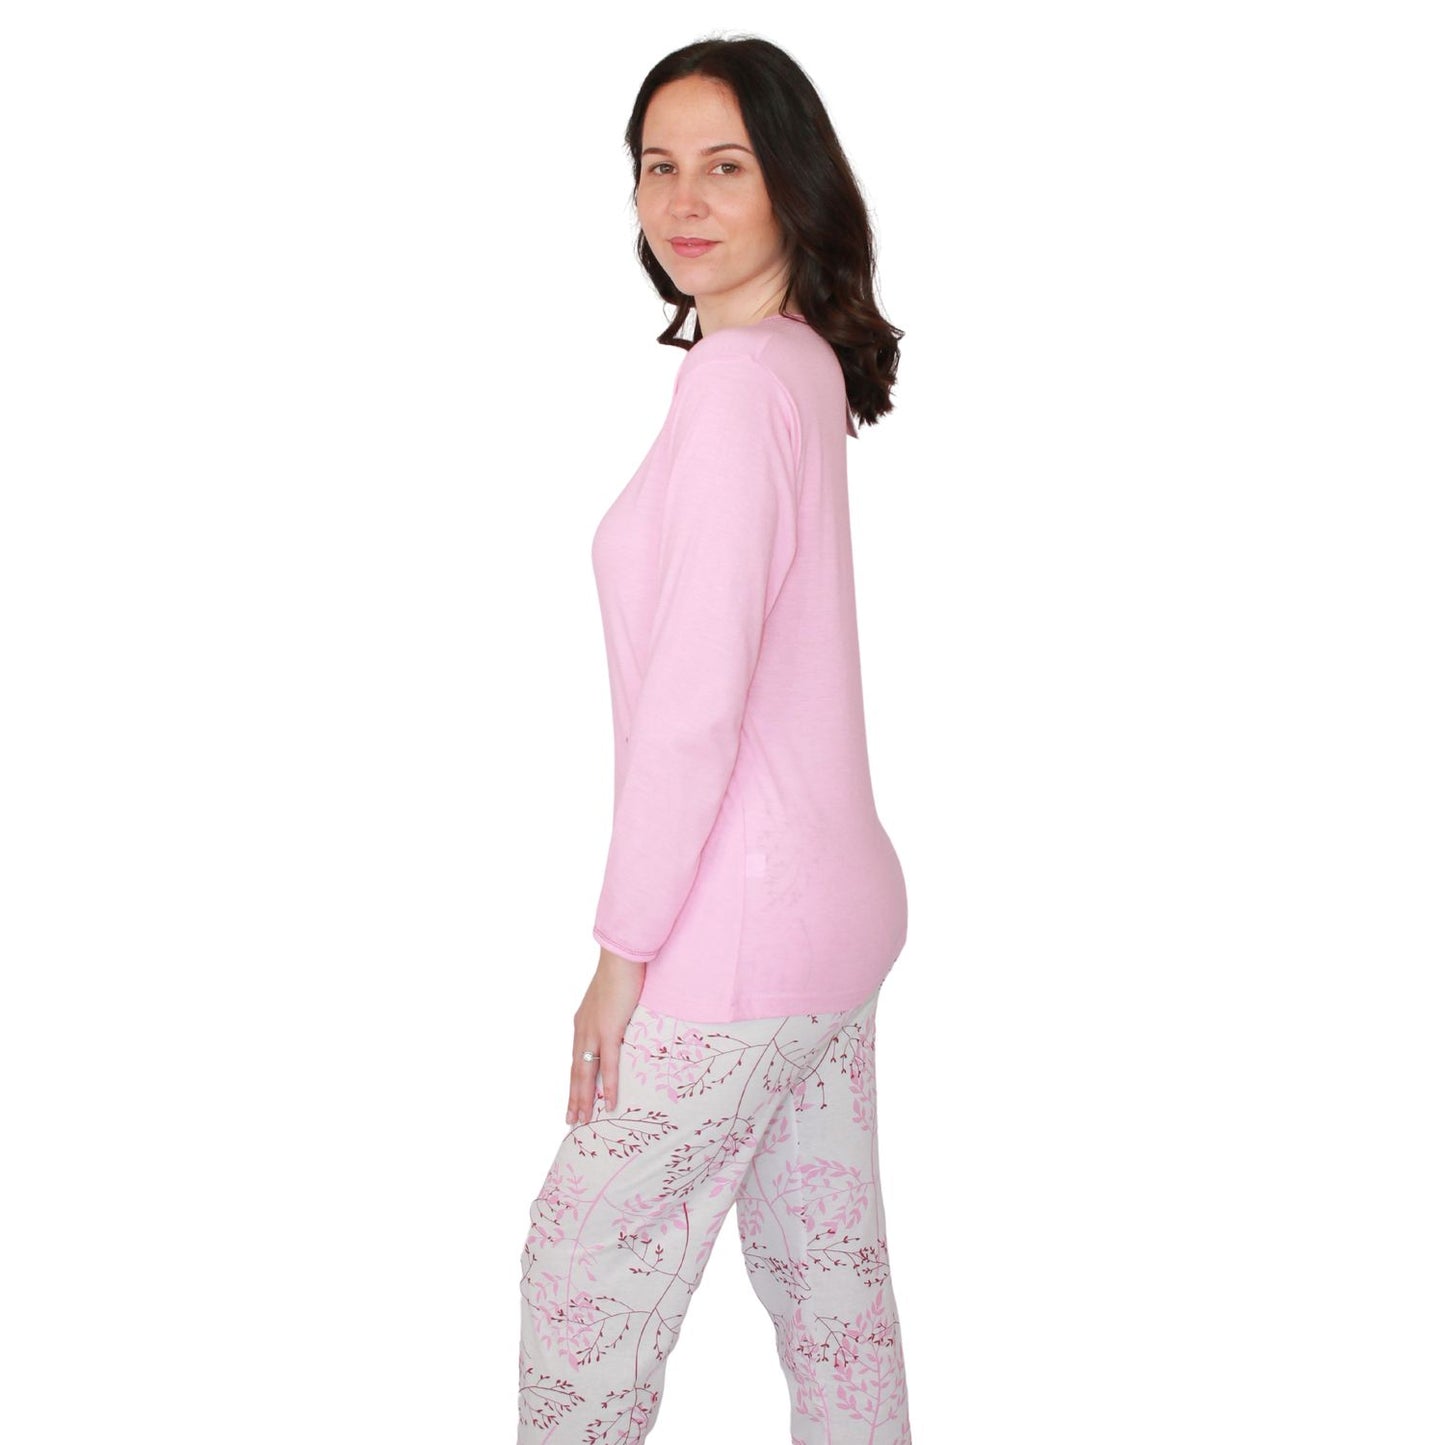 Desana Pijama Mulher Manga Comprida com Calças Padrão Rosa